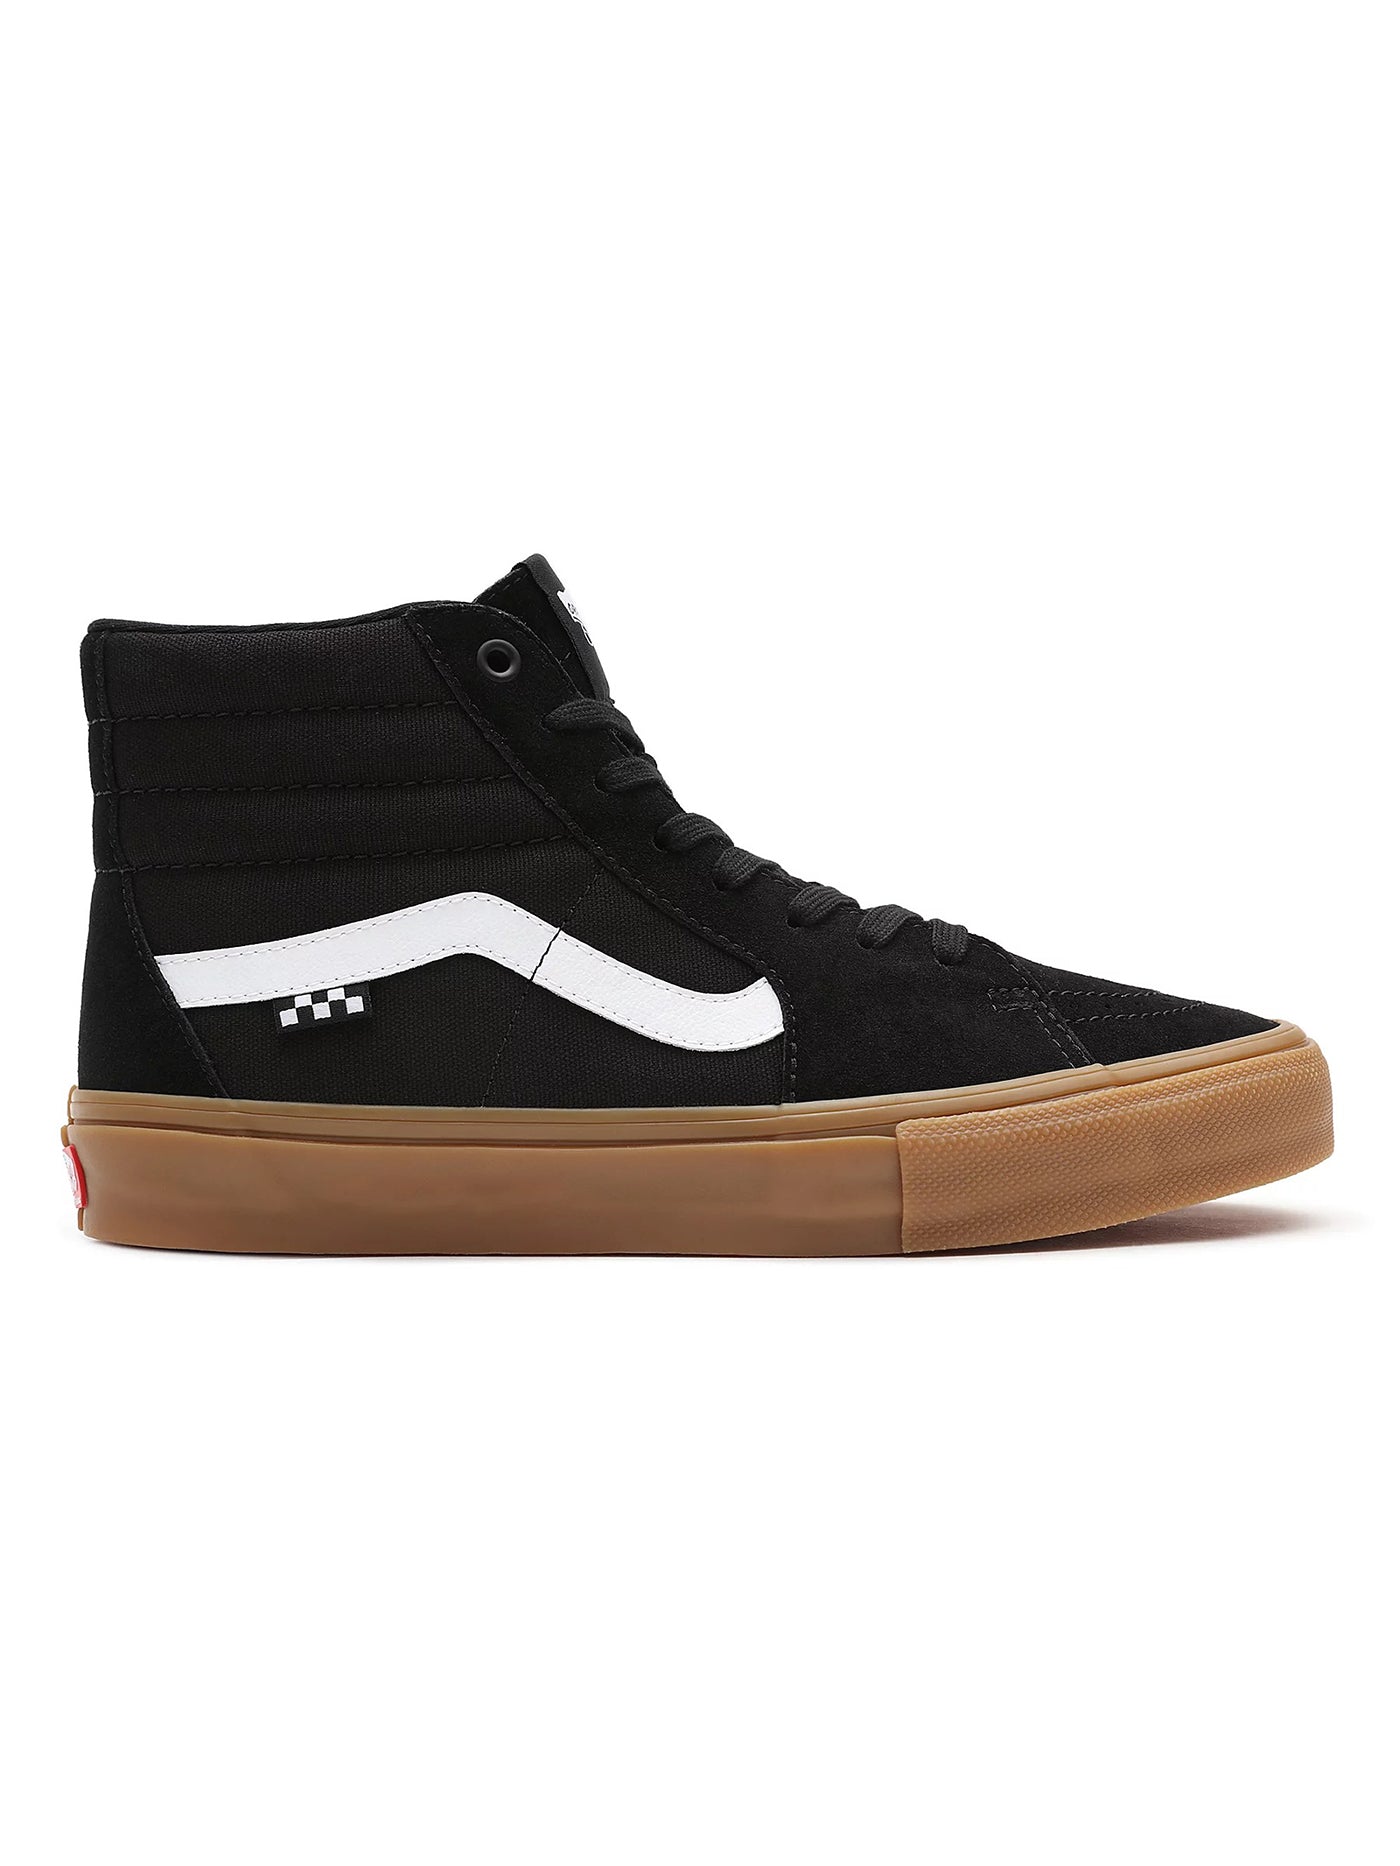 Vans Skate Sk8-Hi Black/Gum Shoes